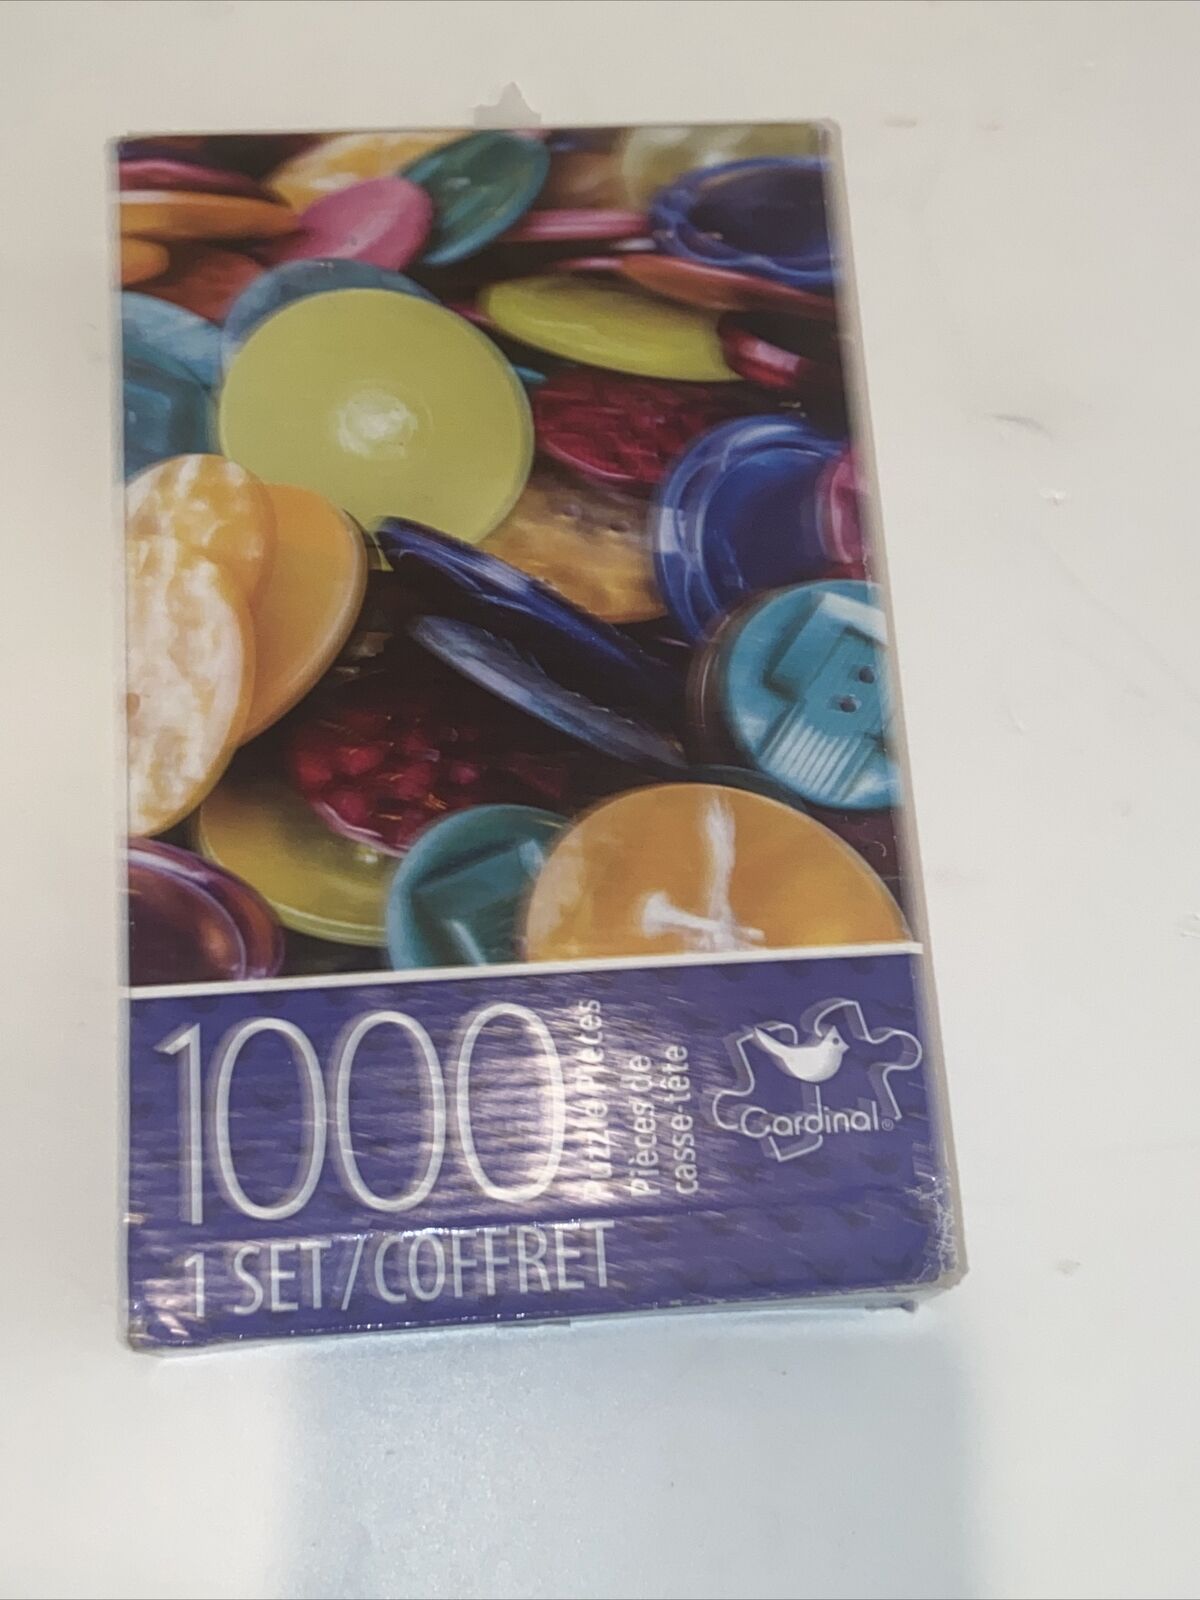 Cardinal Jigsaw Puzzle 1000 Button 1 set 7 confret